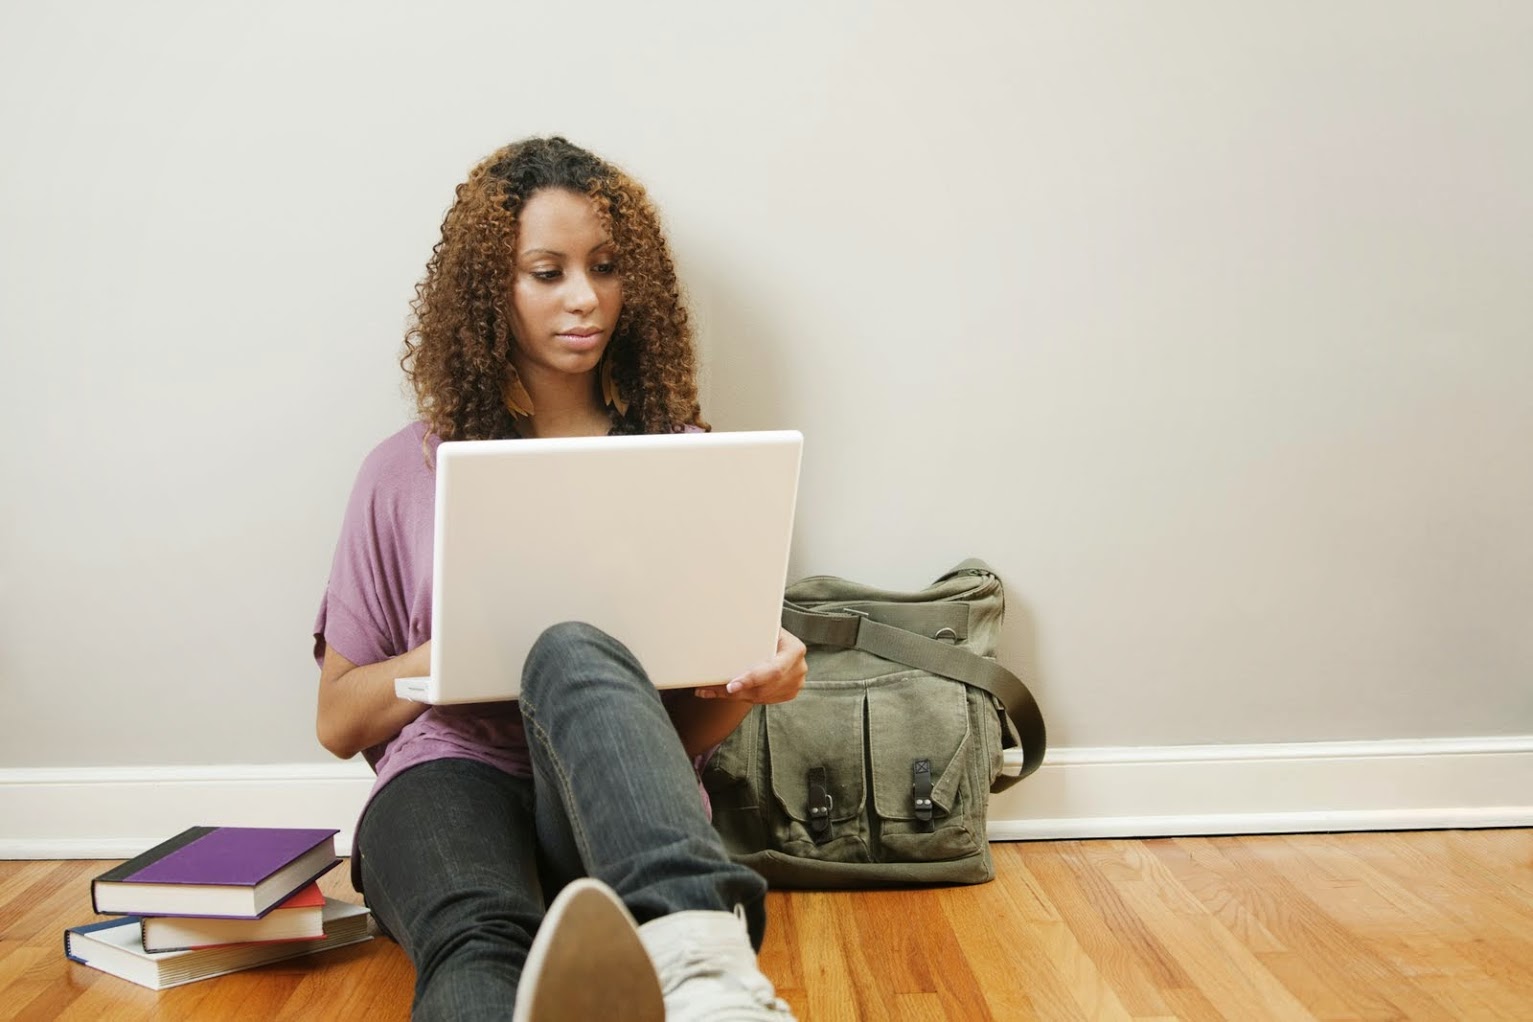 Chica sentada en el suelo de madera mientras se apoya contra una pared gris y mira su computadora portátil con un bolso verde junto a ella